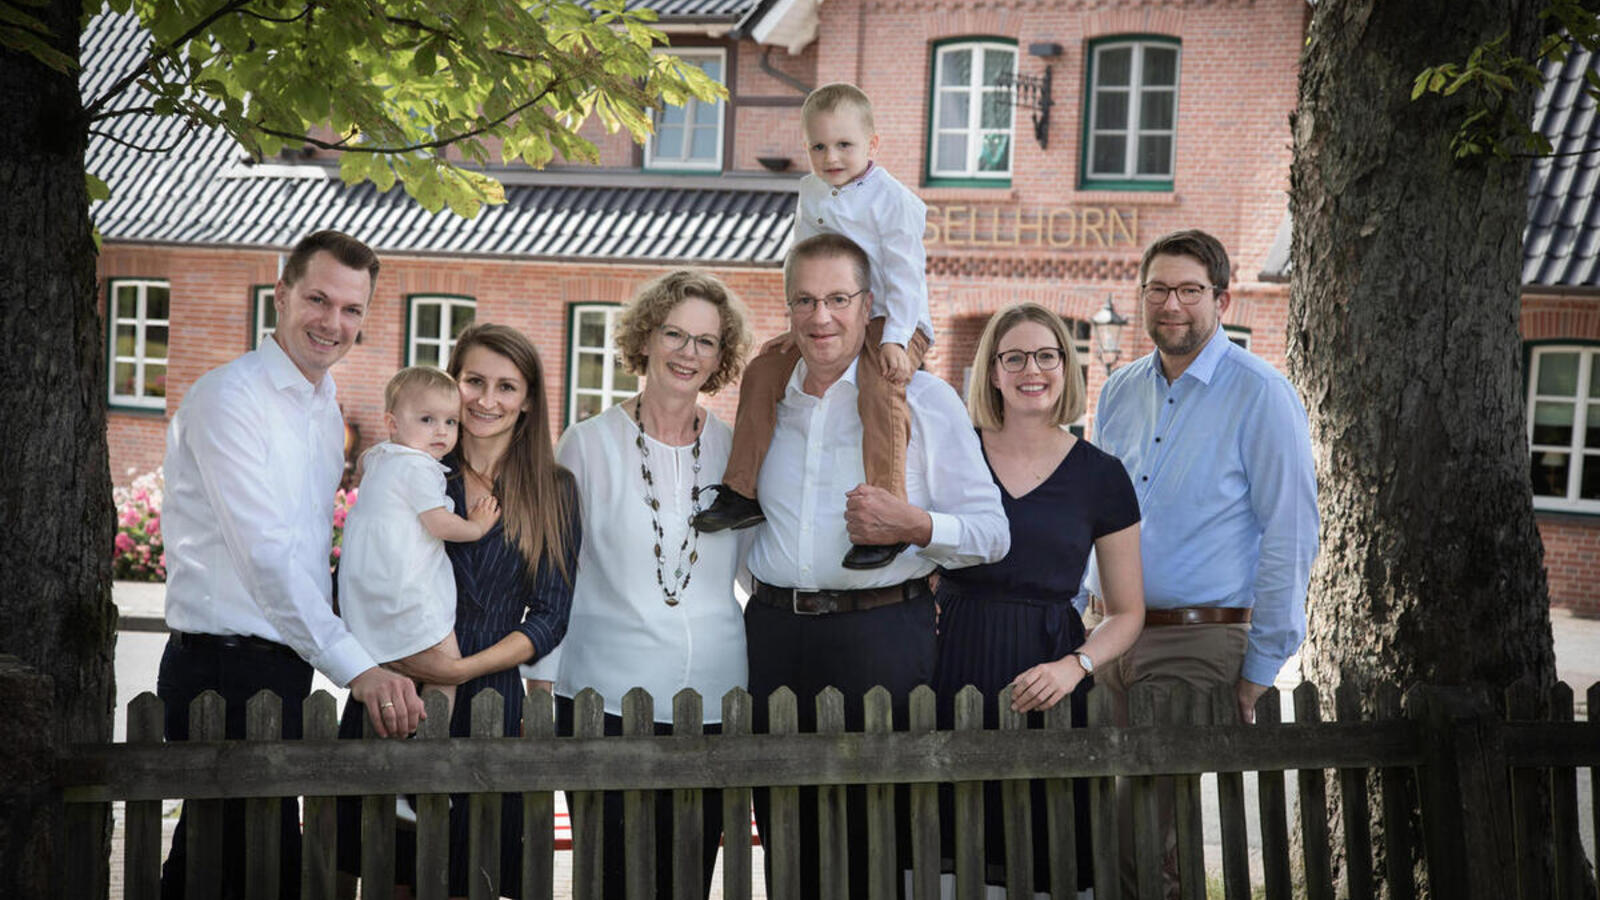 Familien_Dierksen_und_Landschof_2022.jpg: Your hosts family Dierksen and Landschof